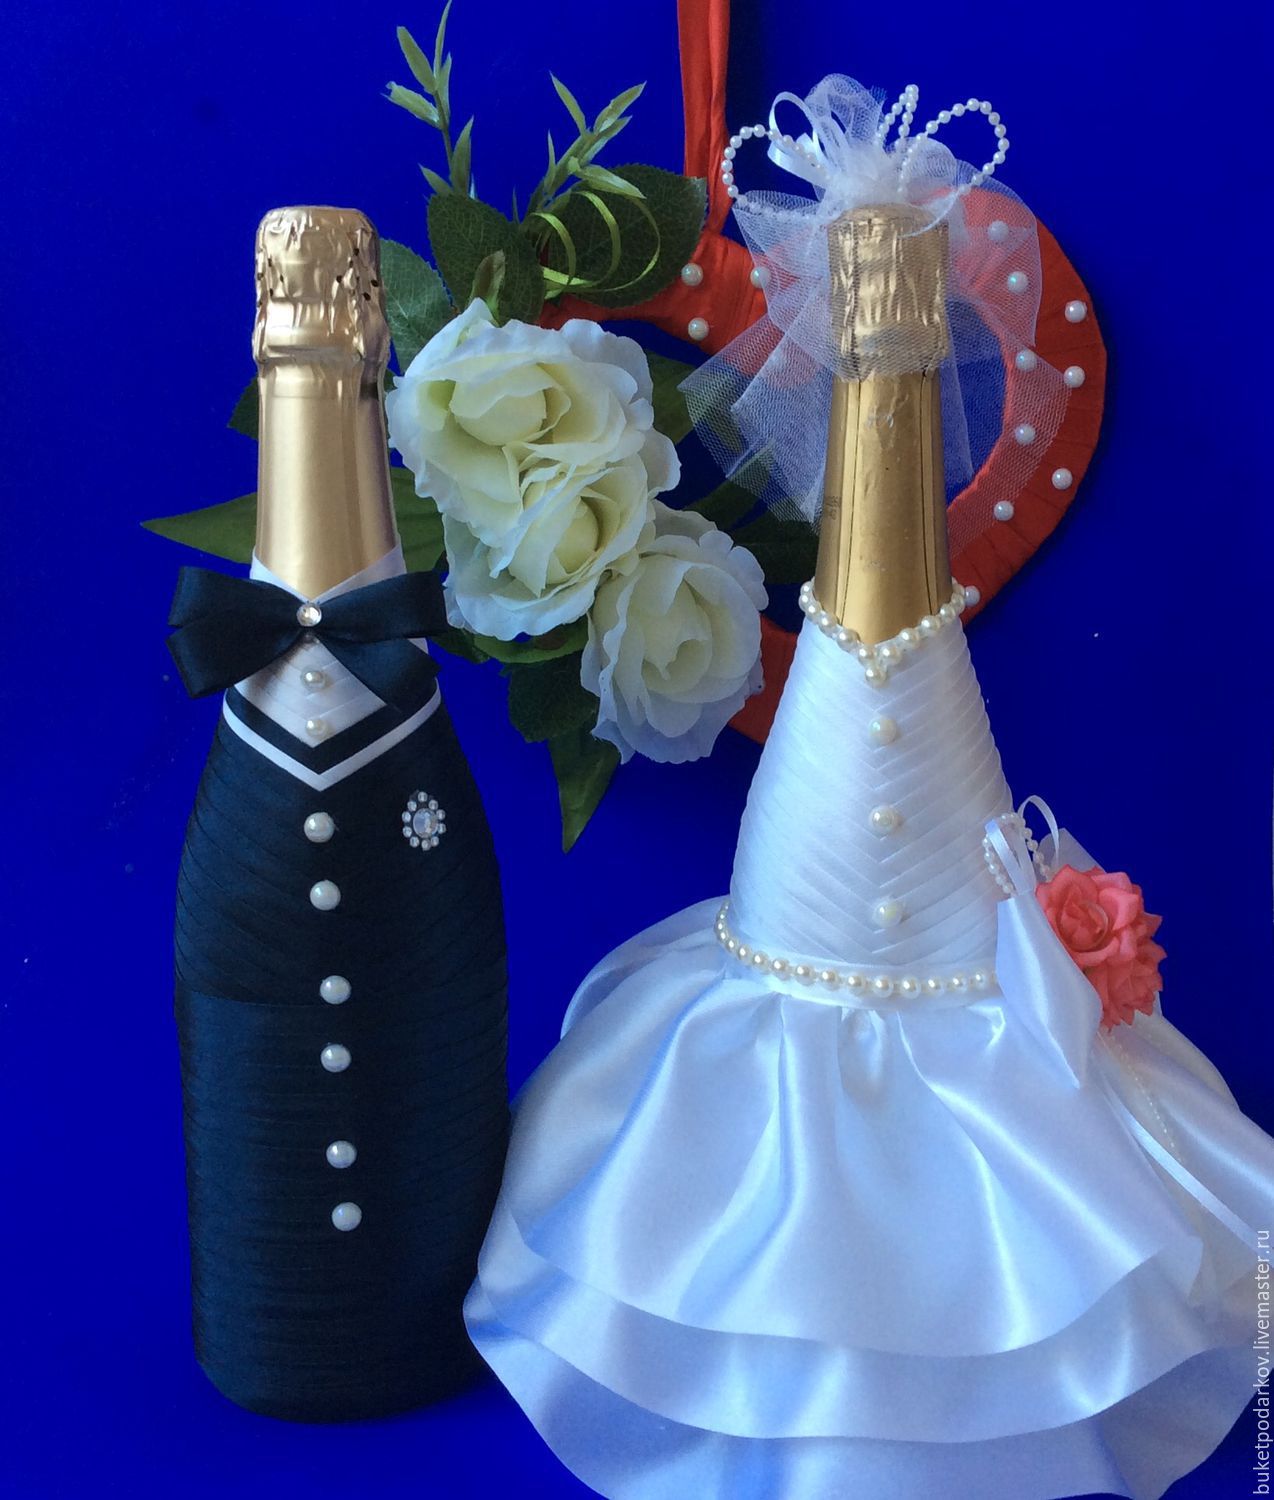 Сделать бутылку шампанского. Свадебное шампанское жених и невеста. Украшение бутылки шампанского. Украшение бутылок на свадьбу. Украшение бутылок шампанского на свадьбу.